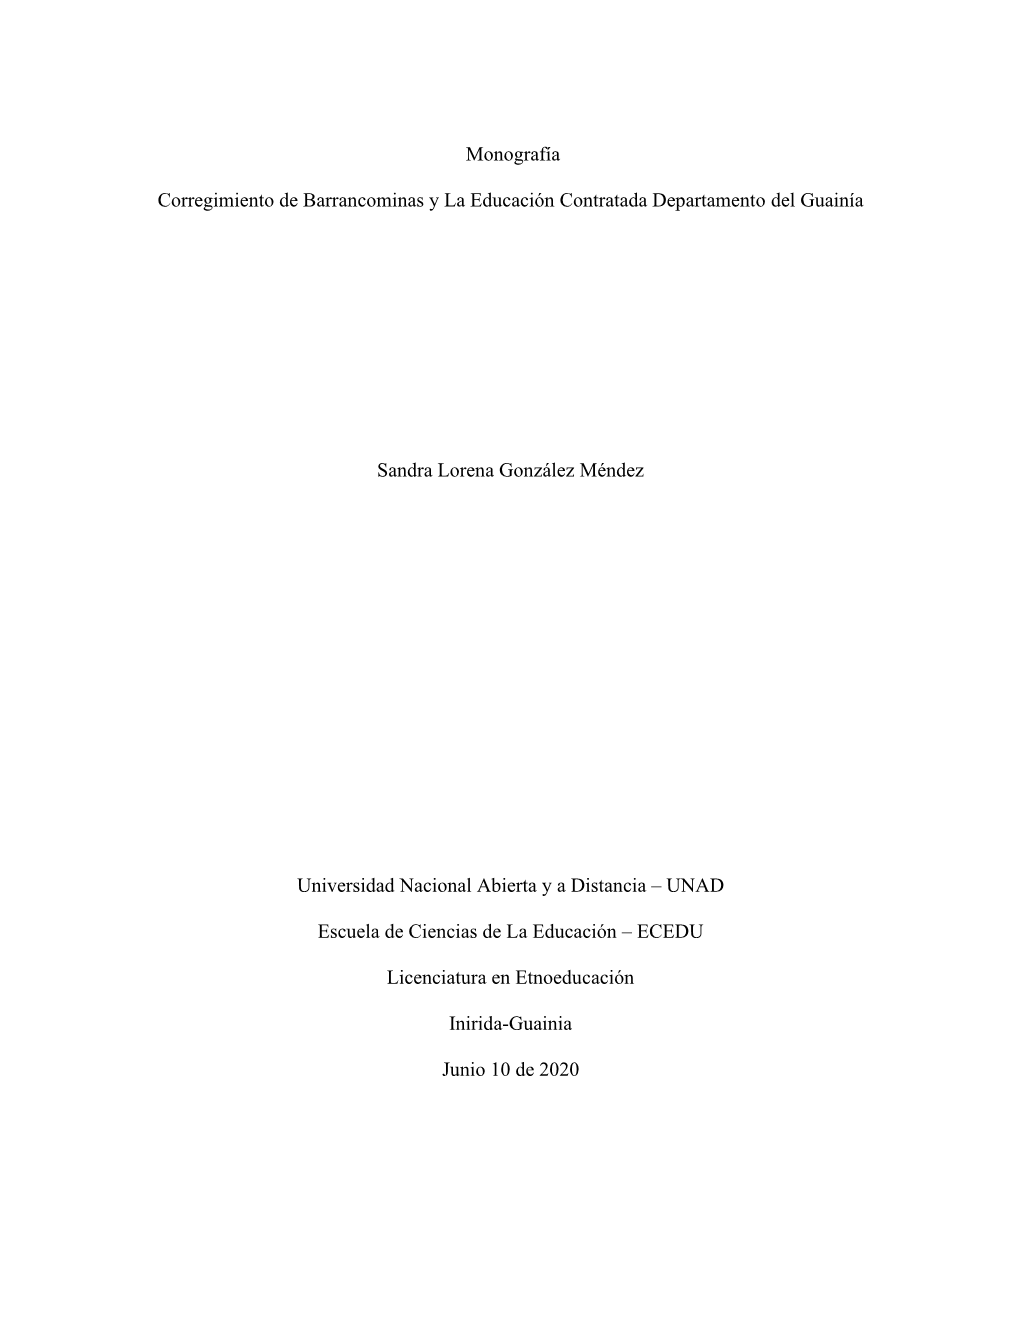 Monografía Corregimiento De Barrancominas Y La Educación